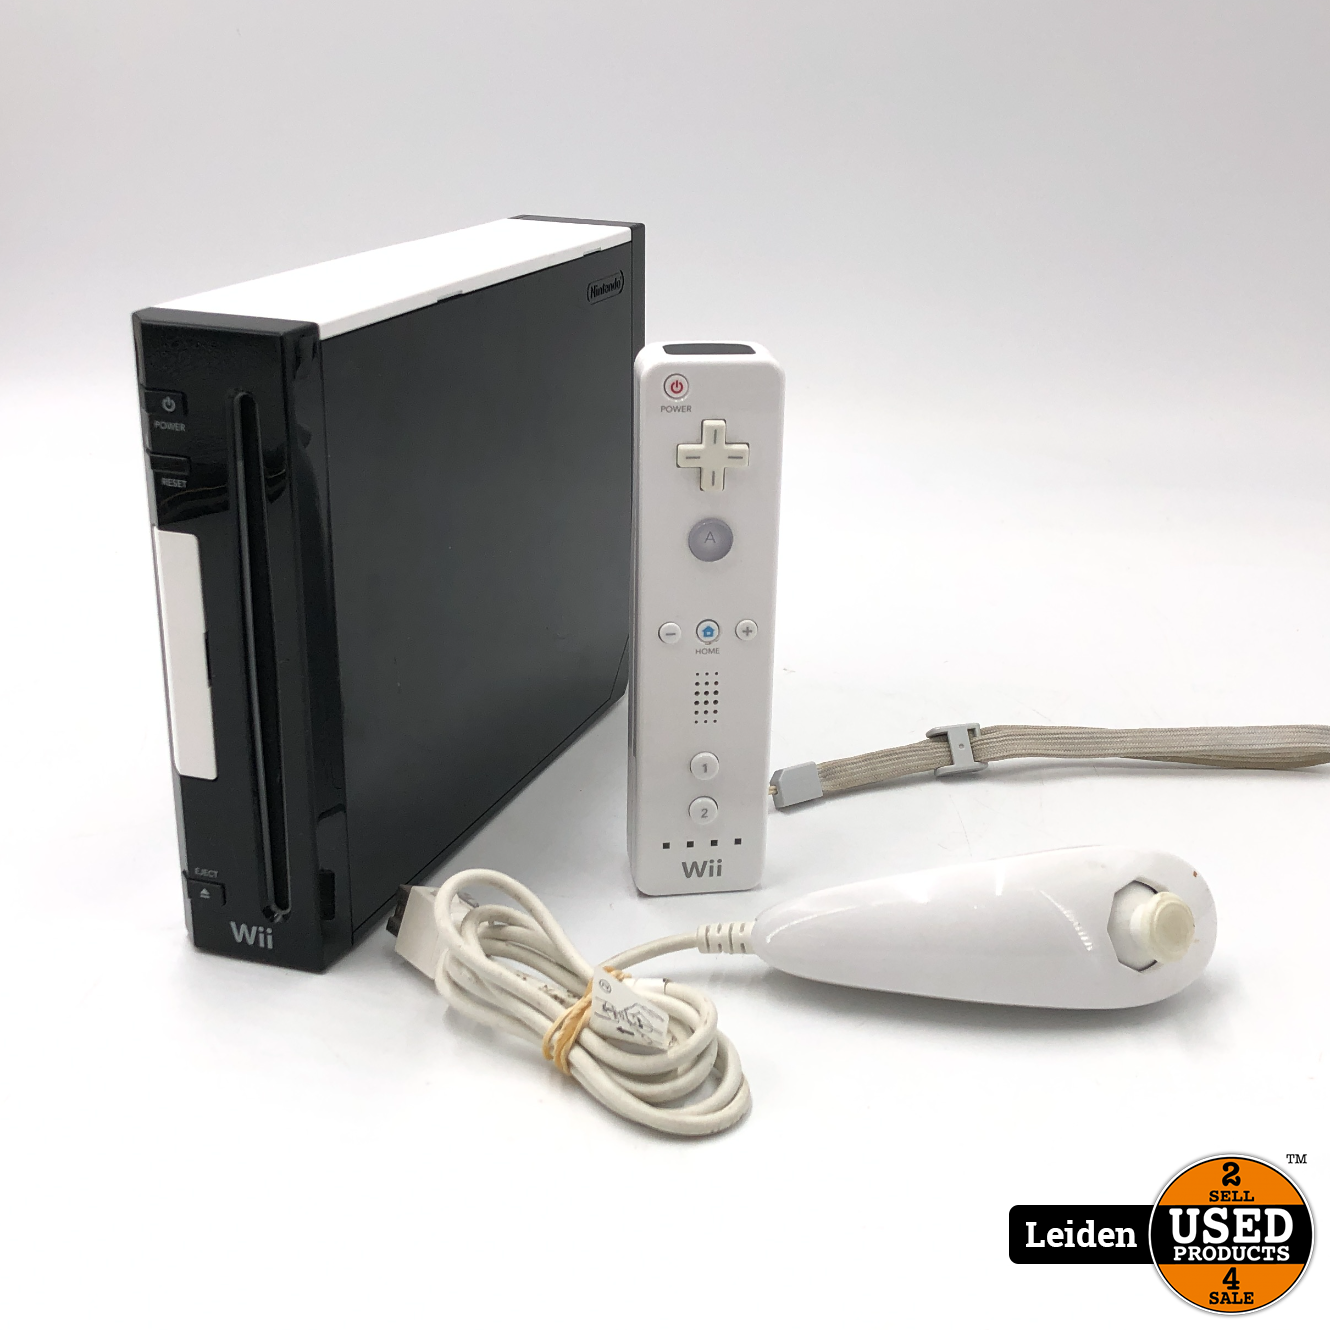 Handel klant Sluiting Nintendo Wii - Zwart/Wit - Used Products Leiden